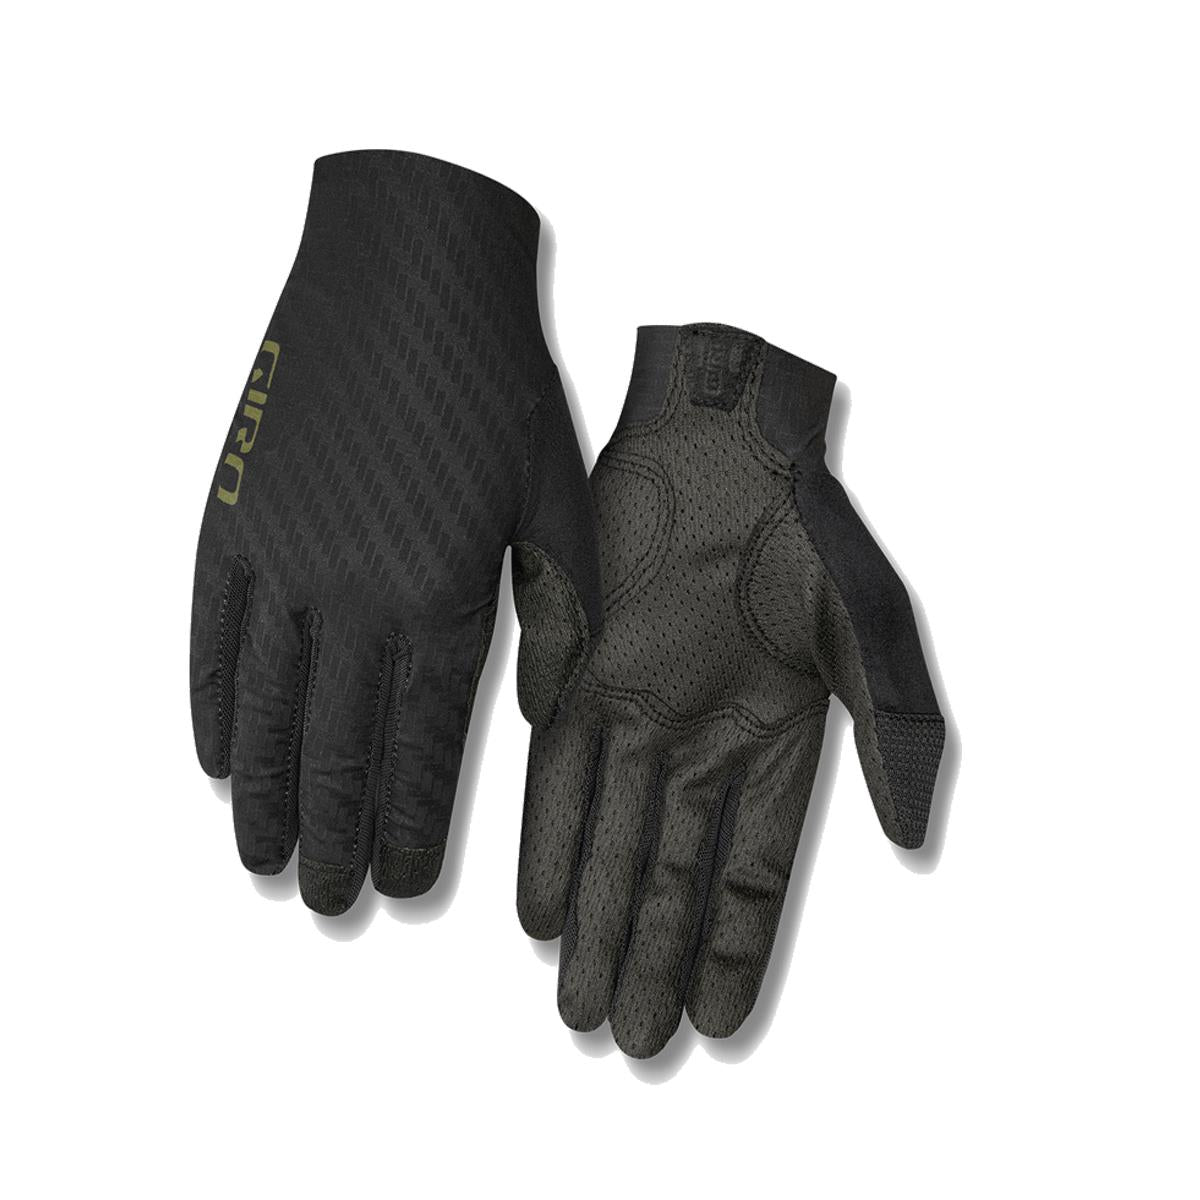 Giro Rivet CS MTB Cycling Gloves